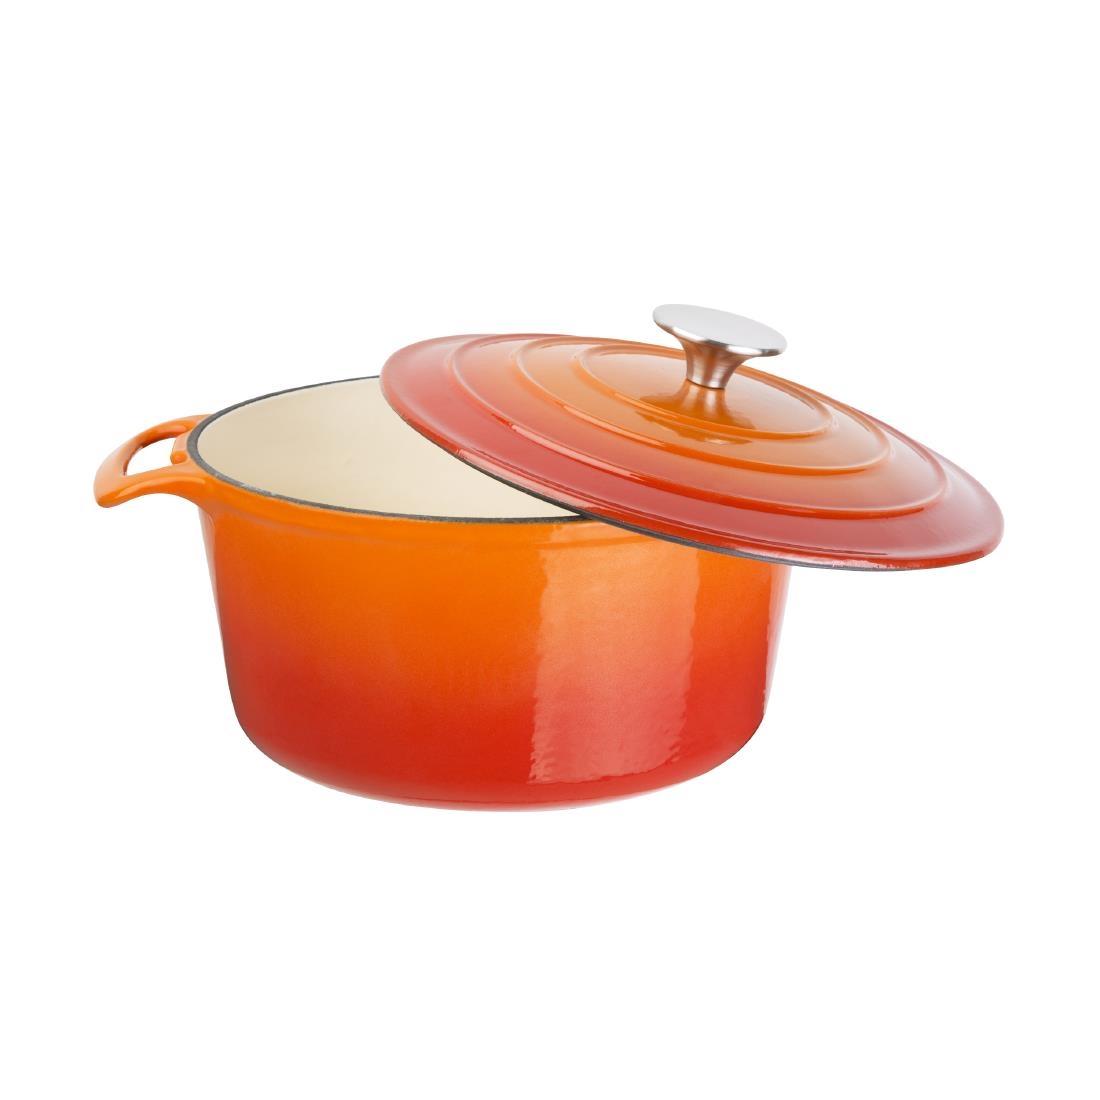 Vogue Orange Round Casserole Dish 3.2Ltr - GH302  - 4